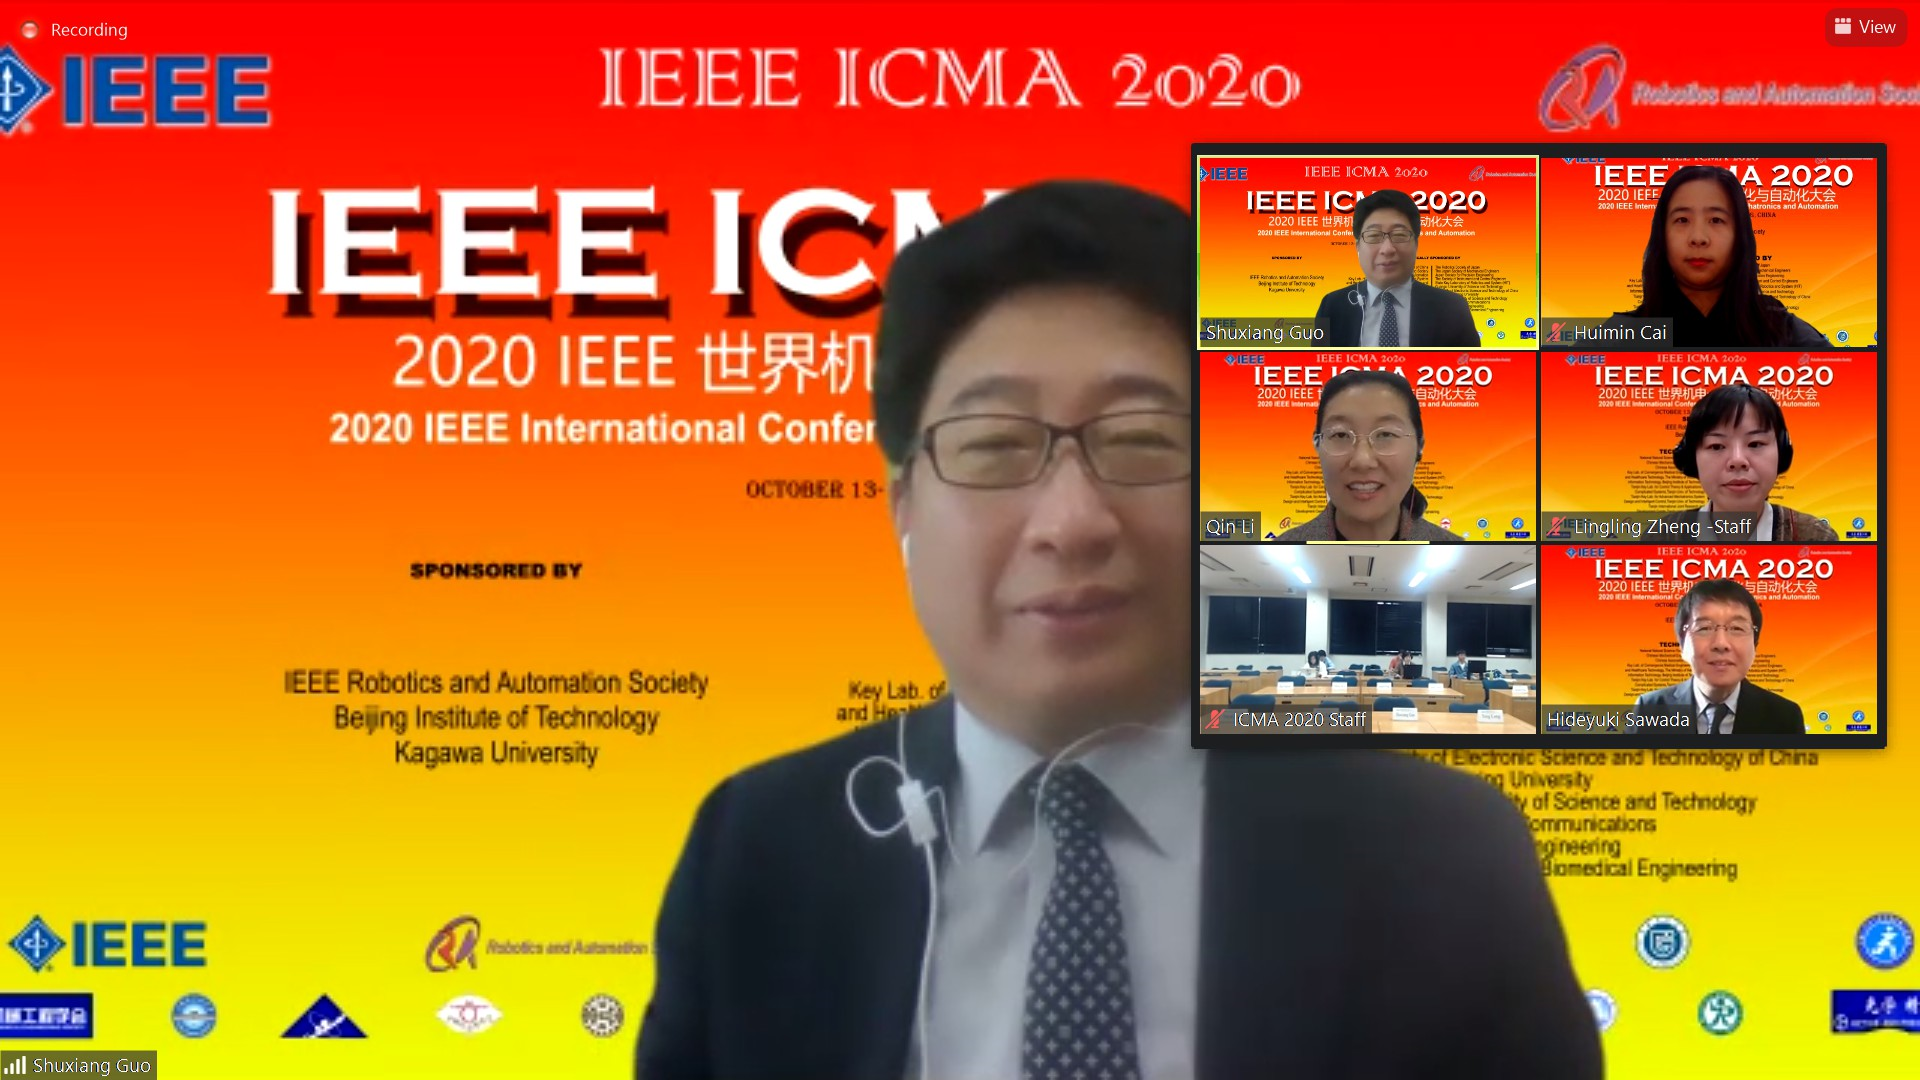 IEEE ICMA 2020, Prof. Guo holding the ceremony